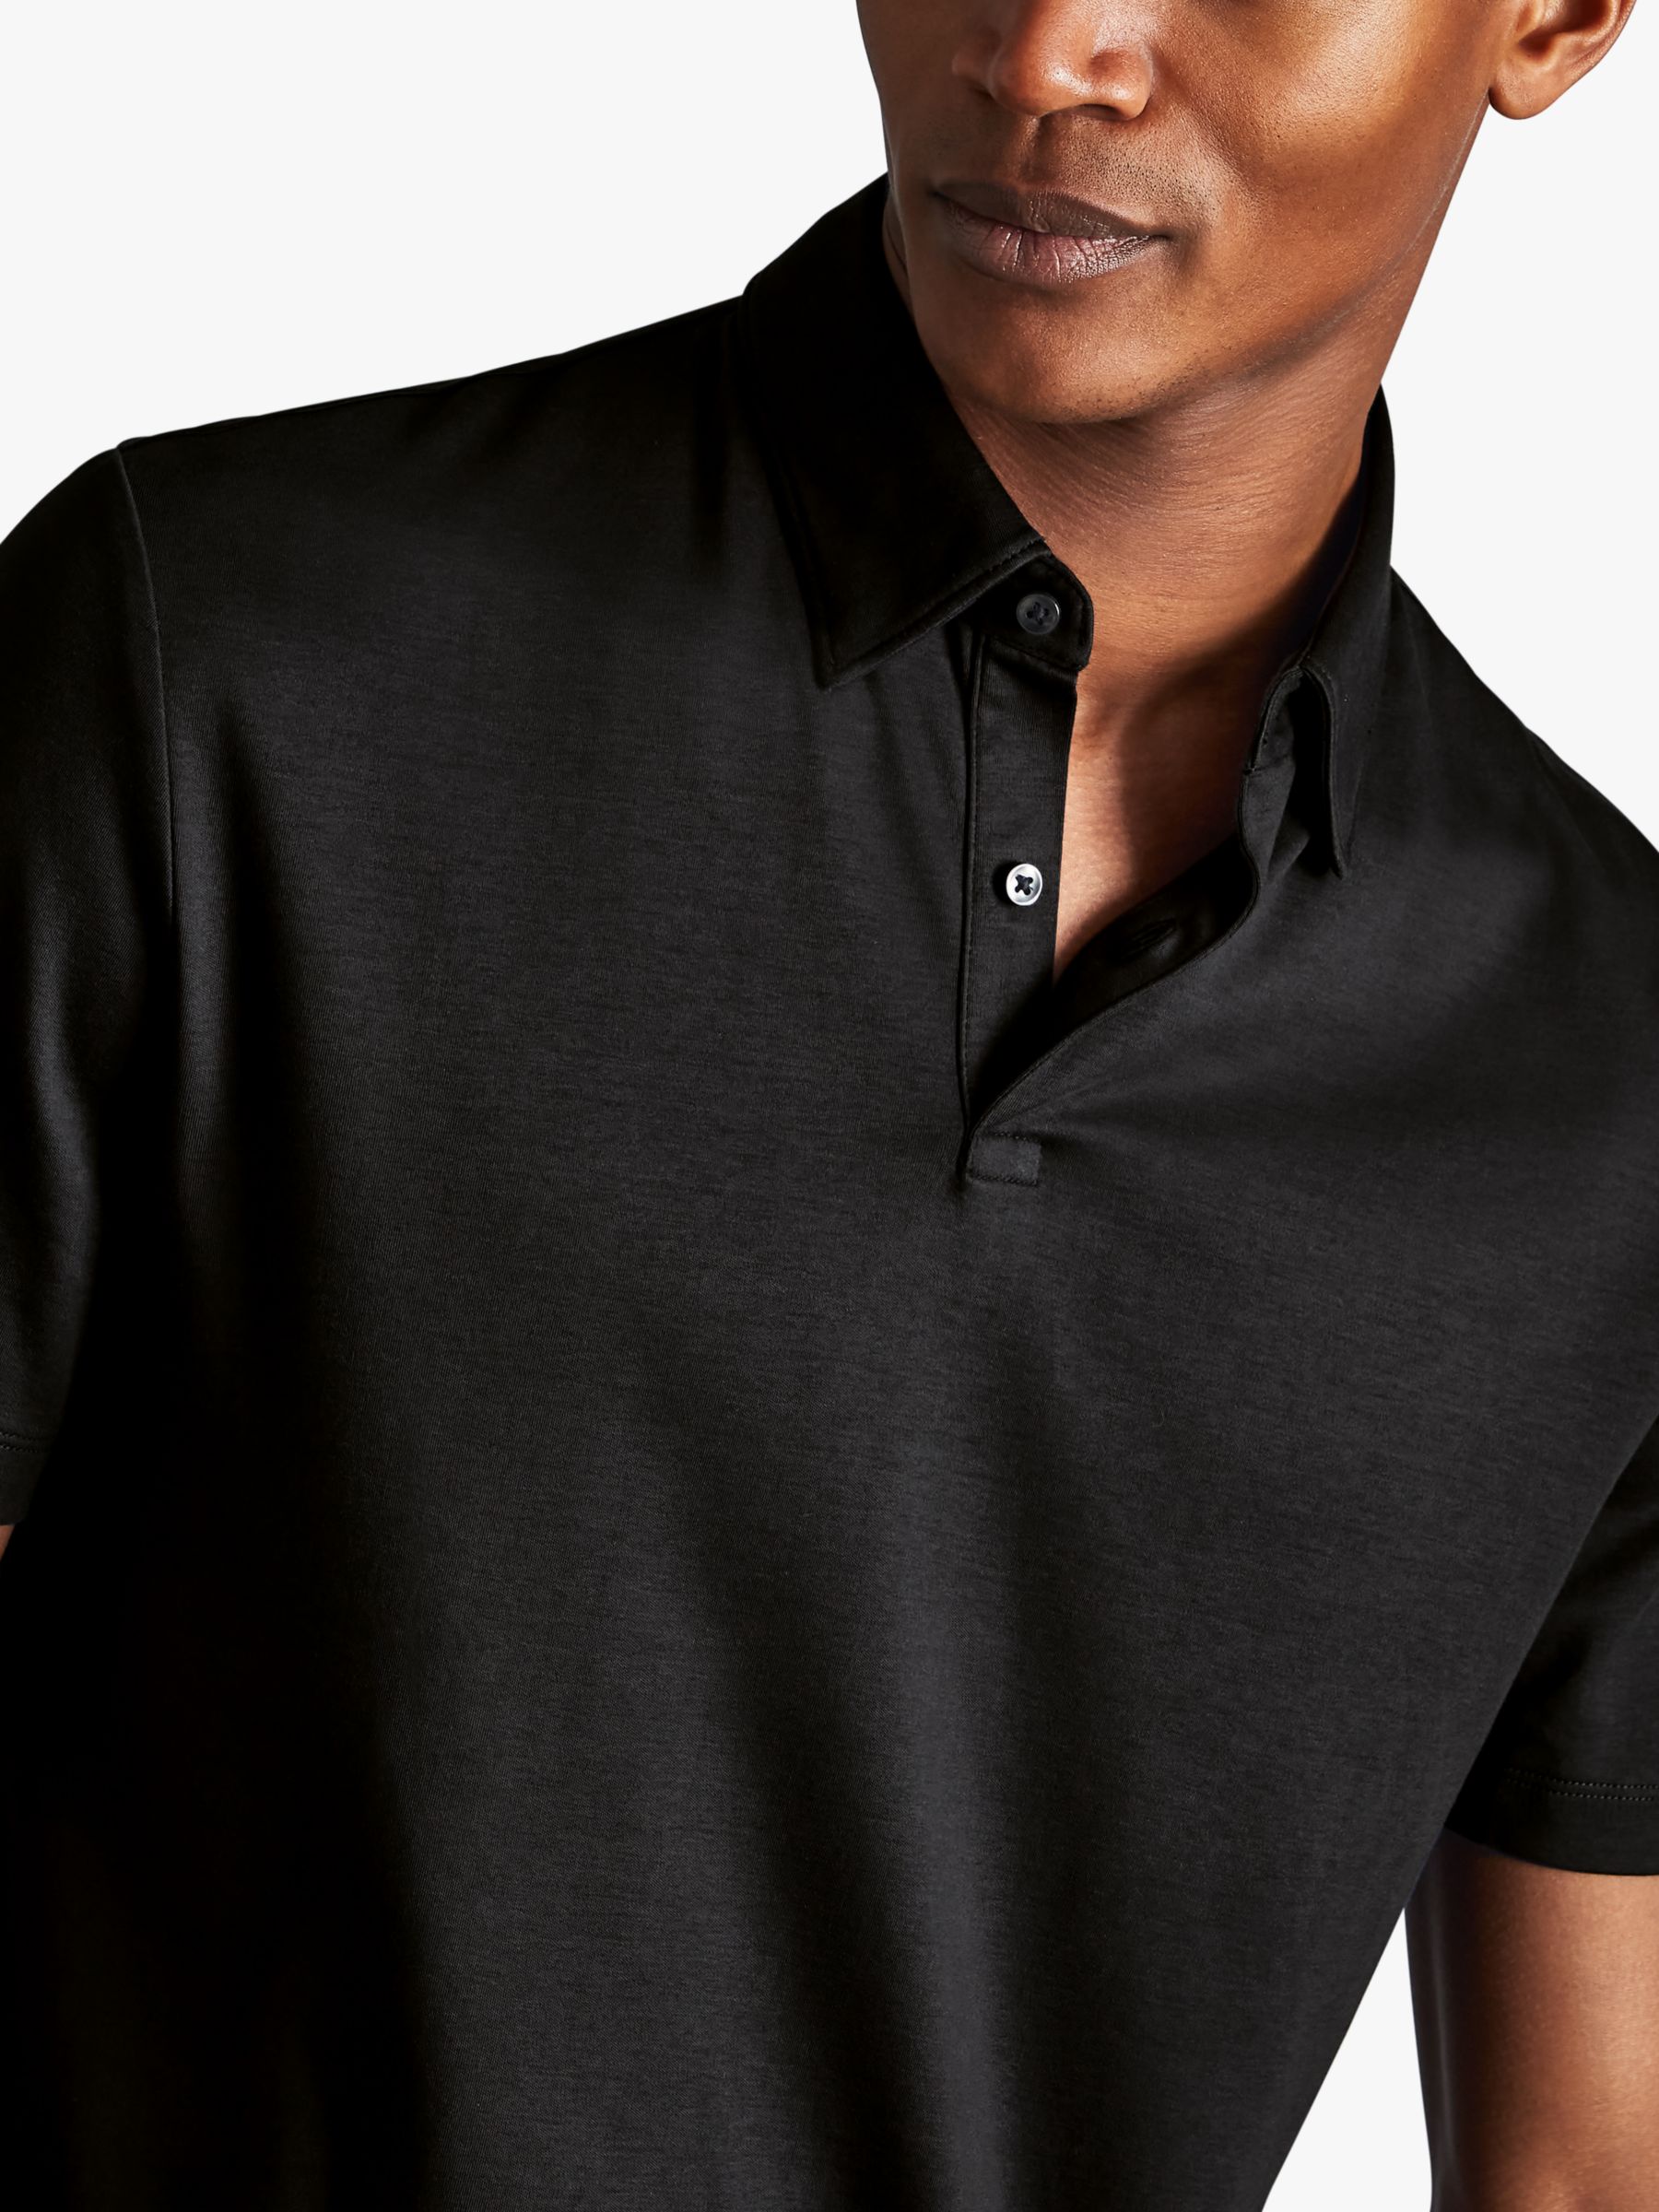 Charles Tyrwhitt Smart Jersey Short Sleeve Polo, Black, S